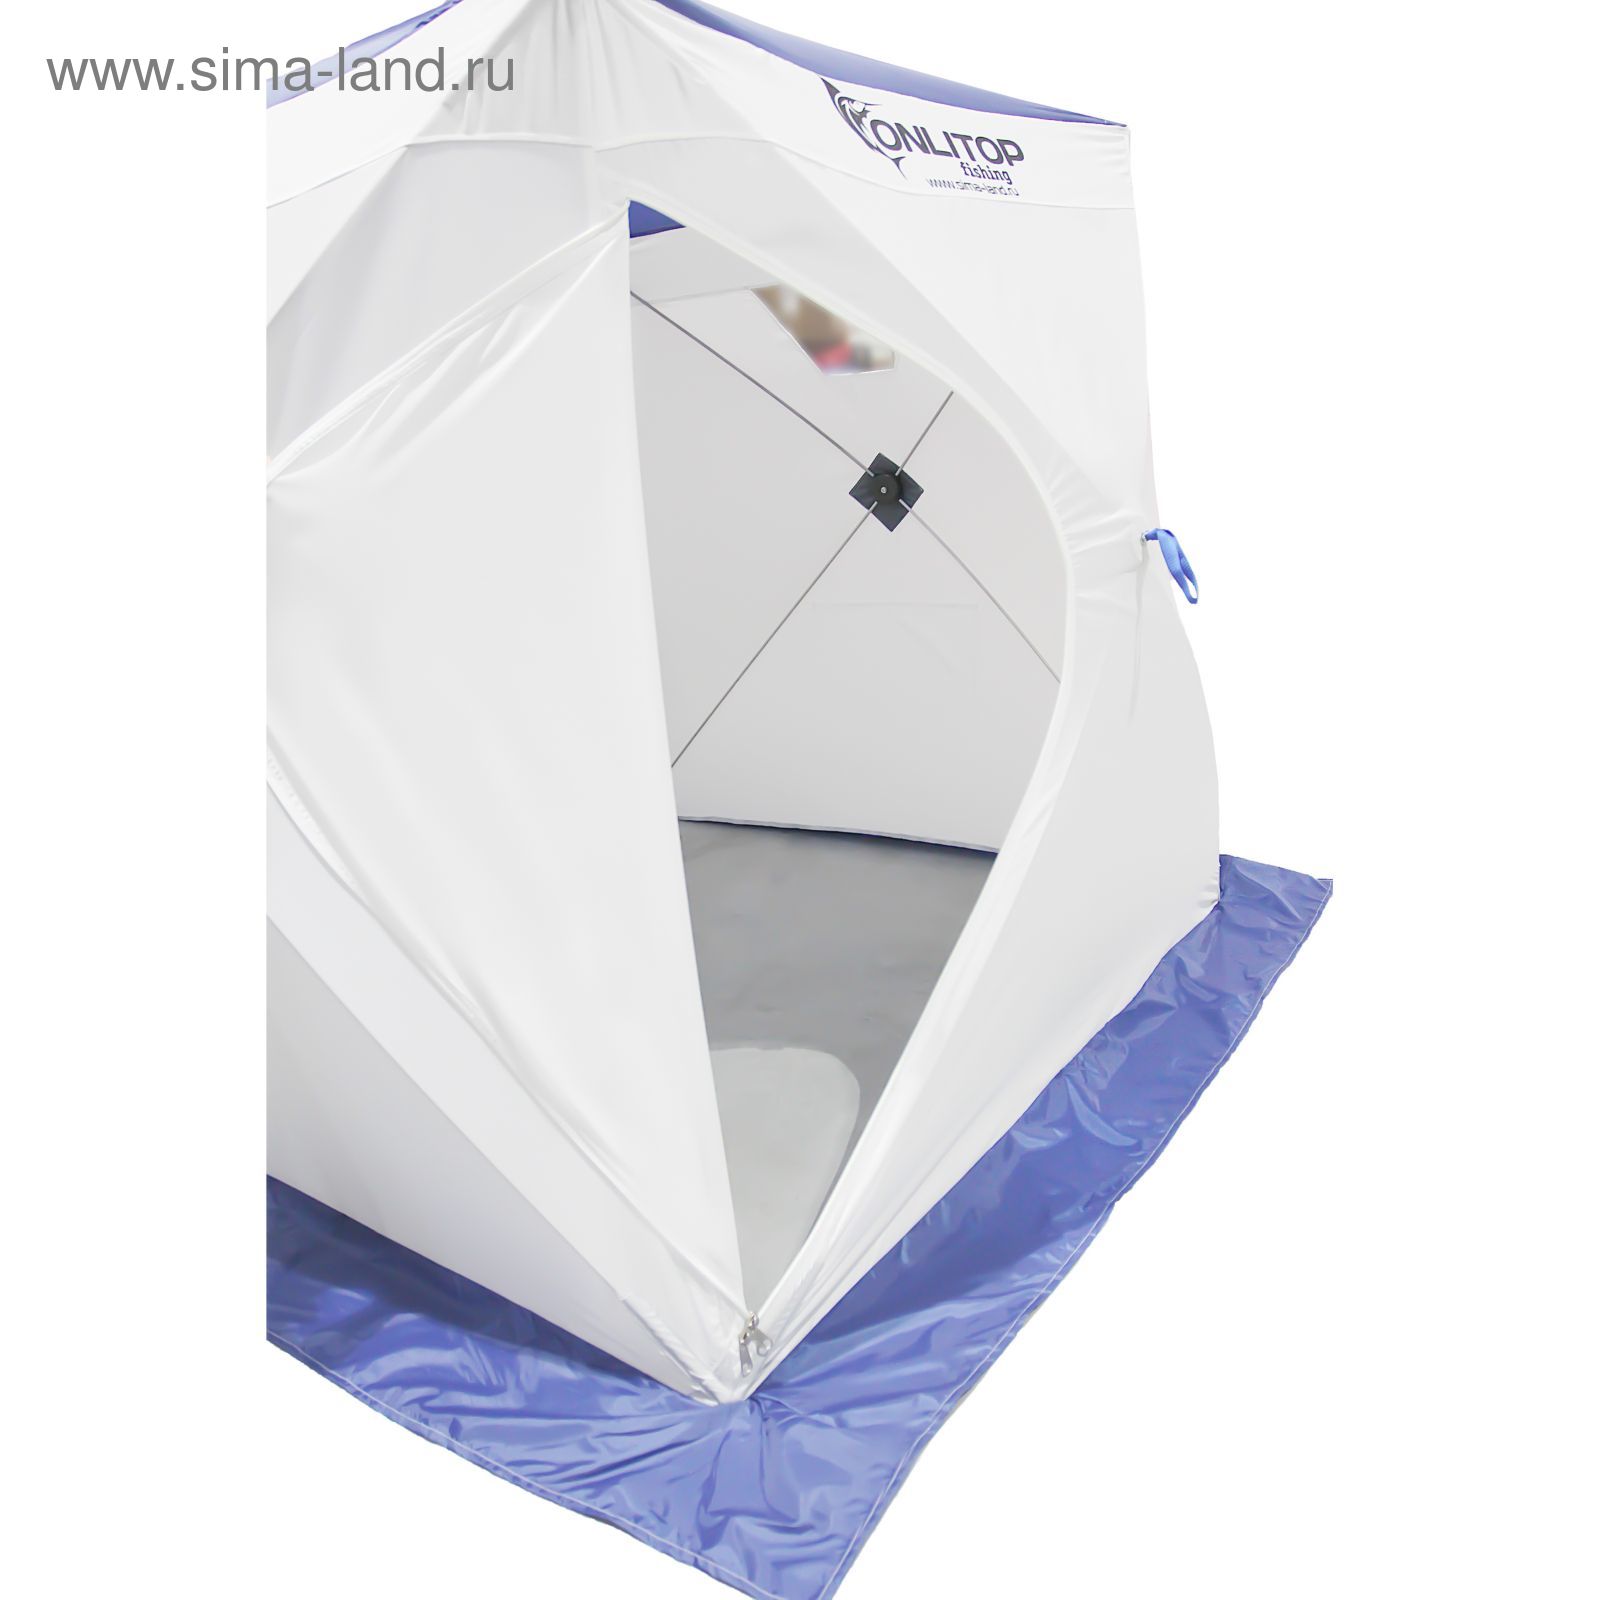 Палатка "Призма Стандарт" 170, 1-слойная, цвет бело-синий